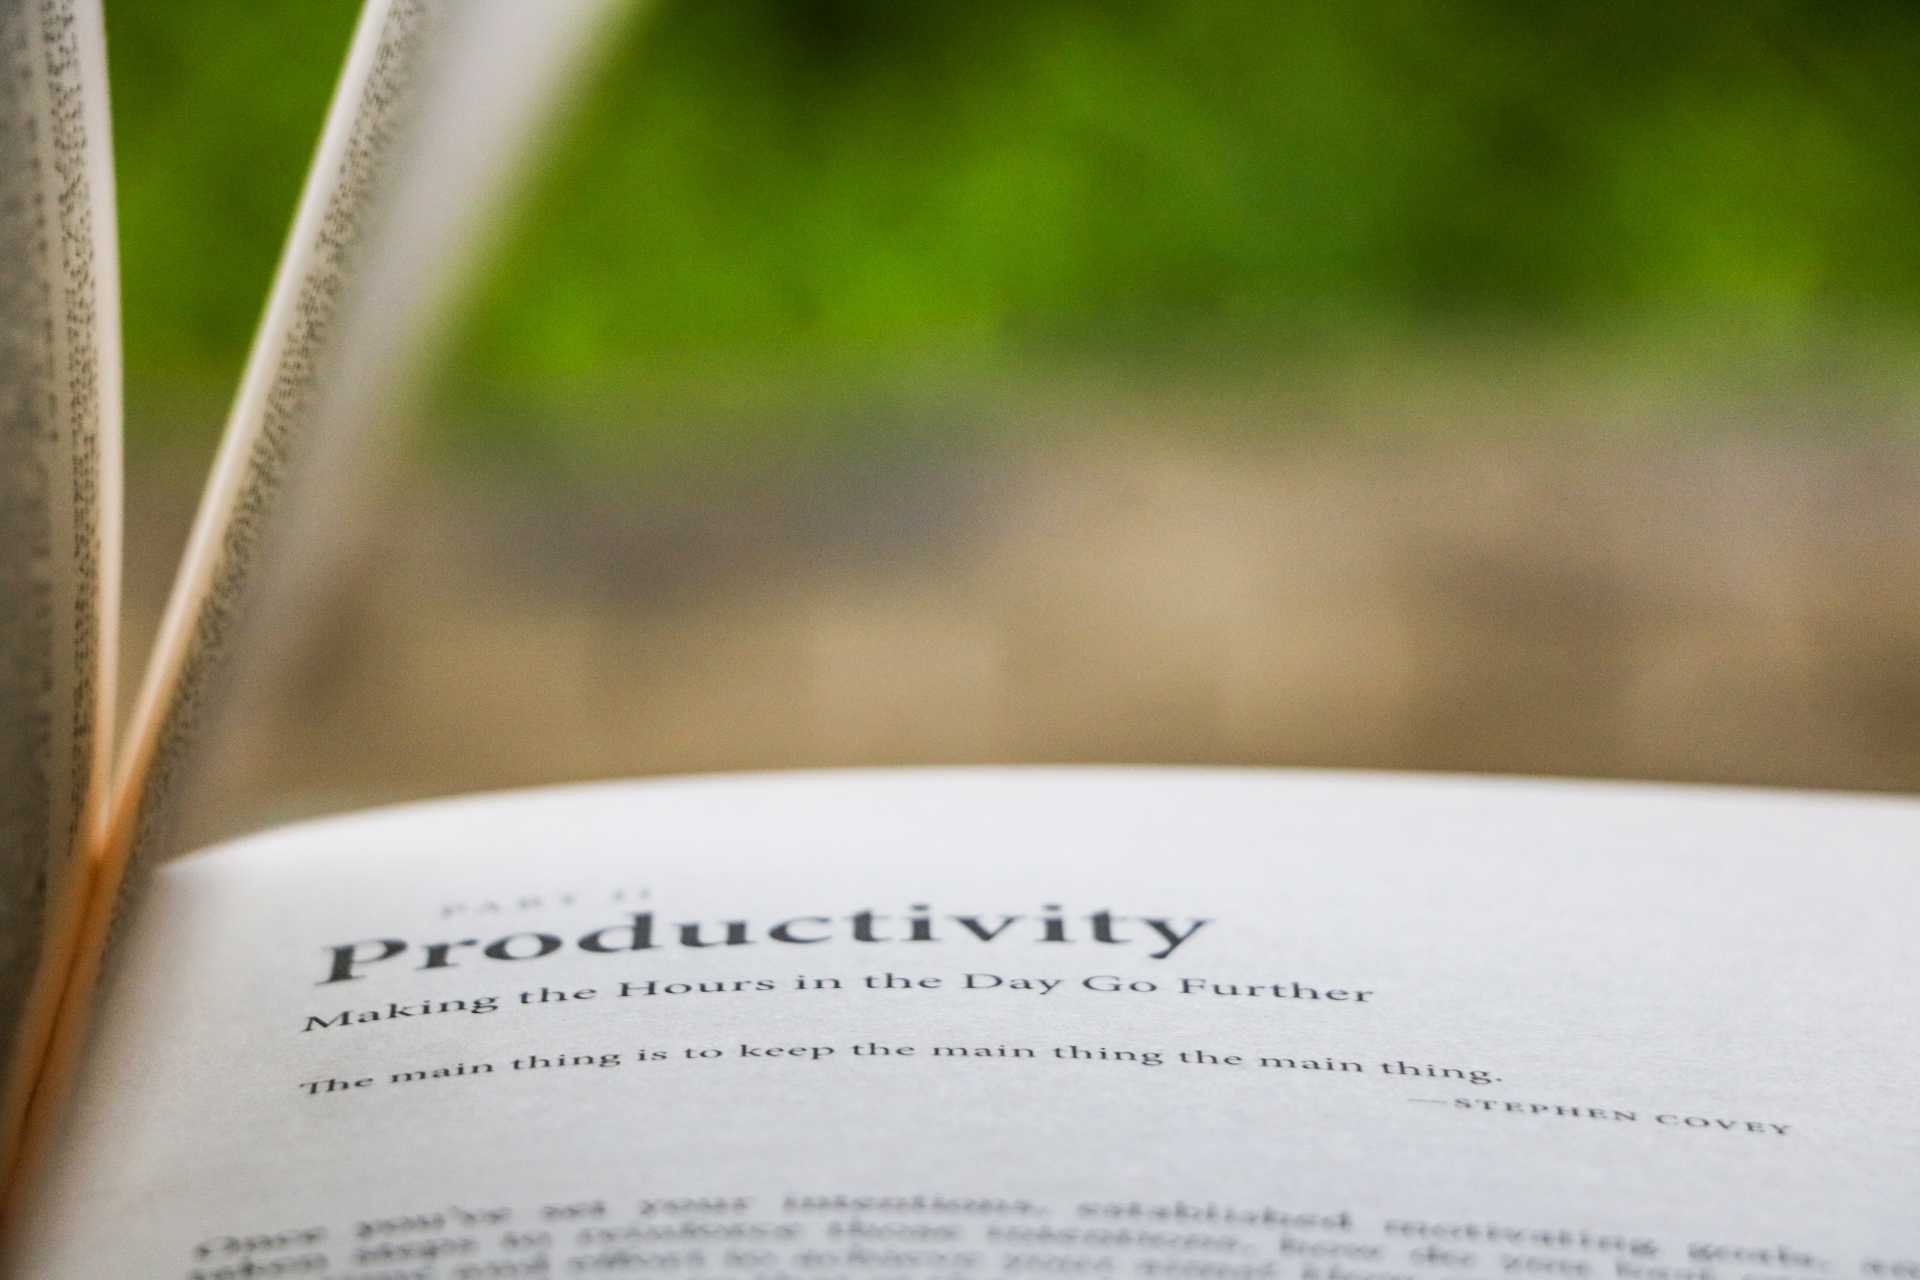 definicion de productividad en diccionario